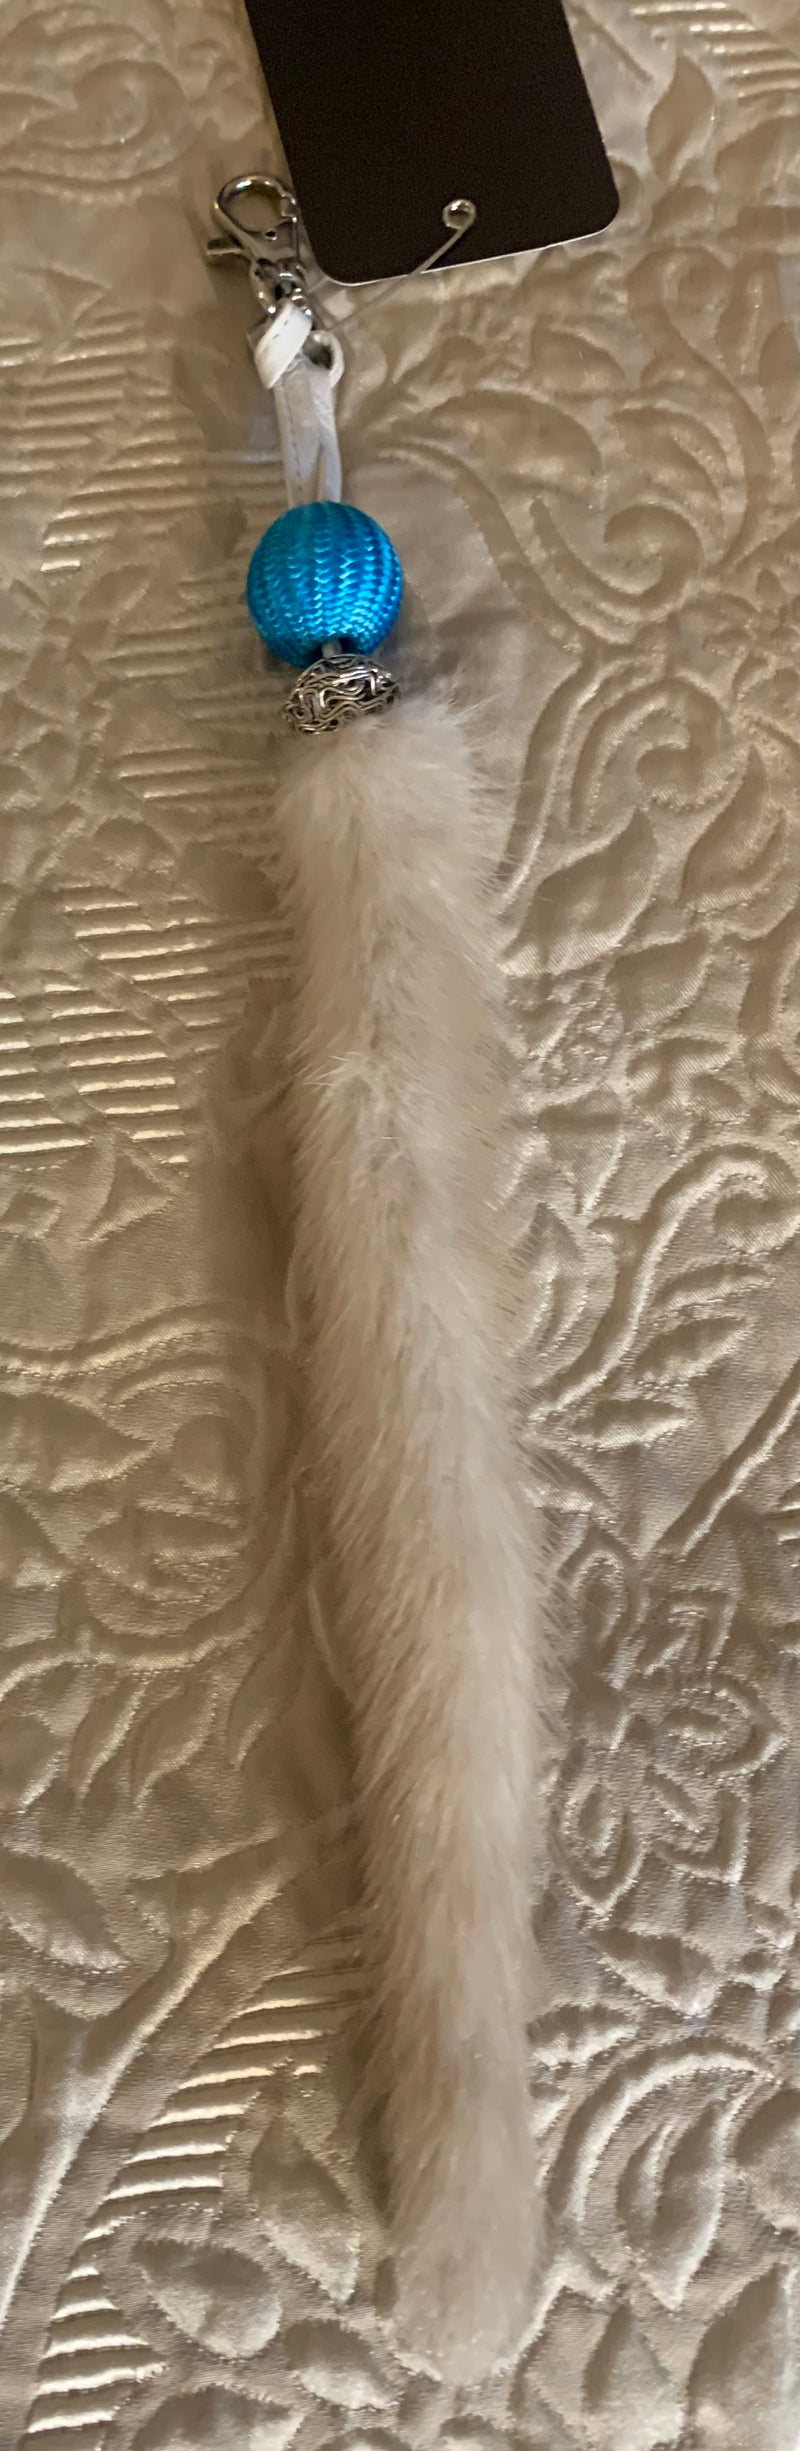 Fur tail